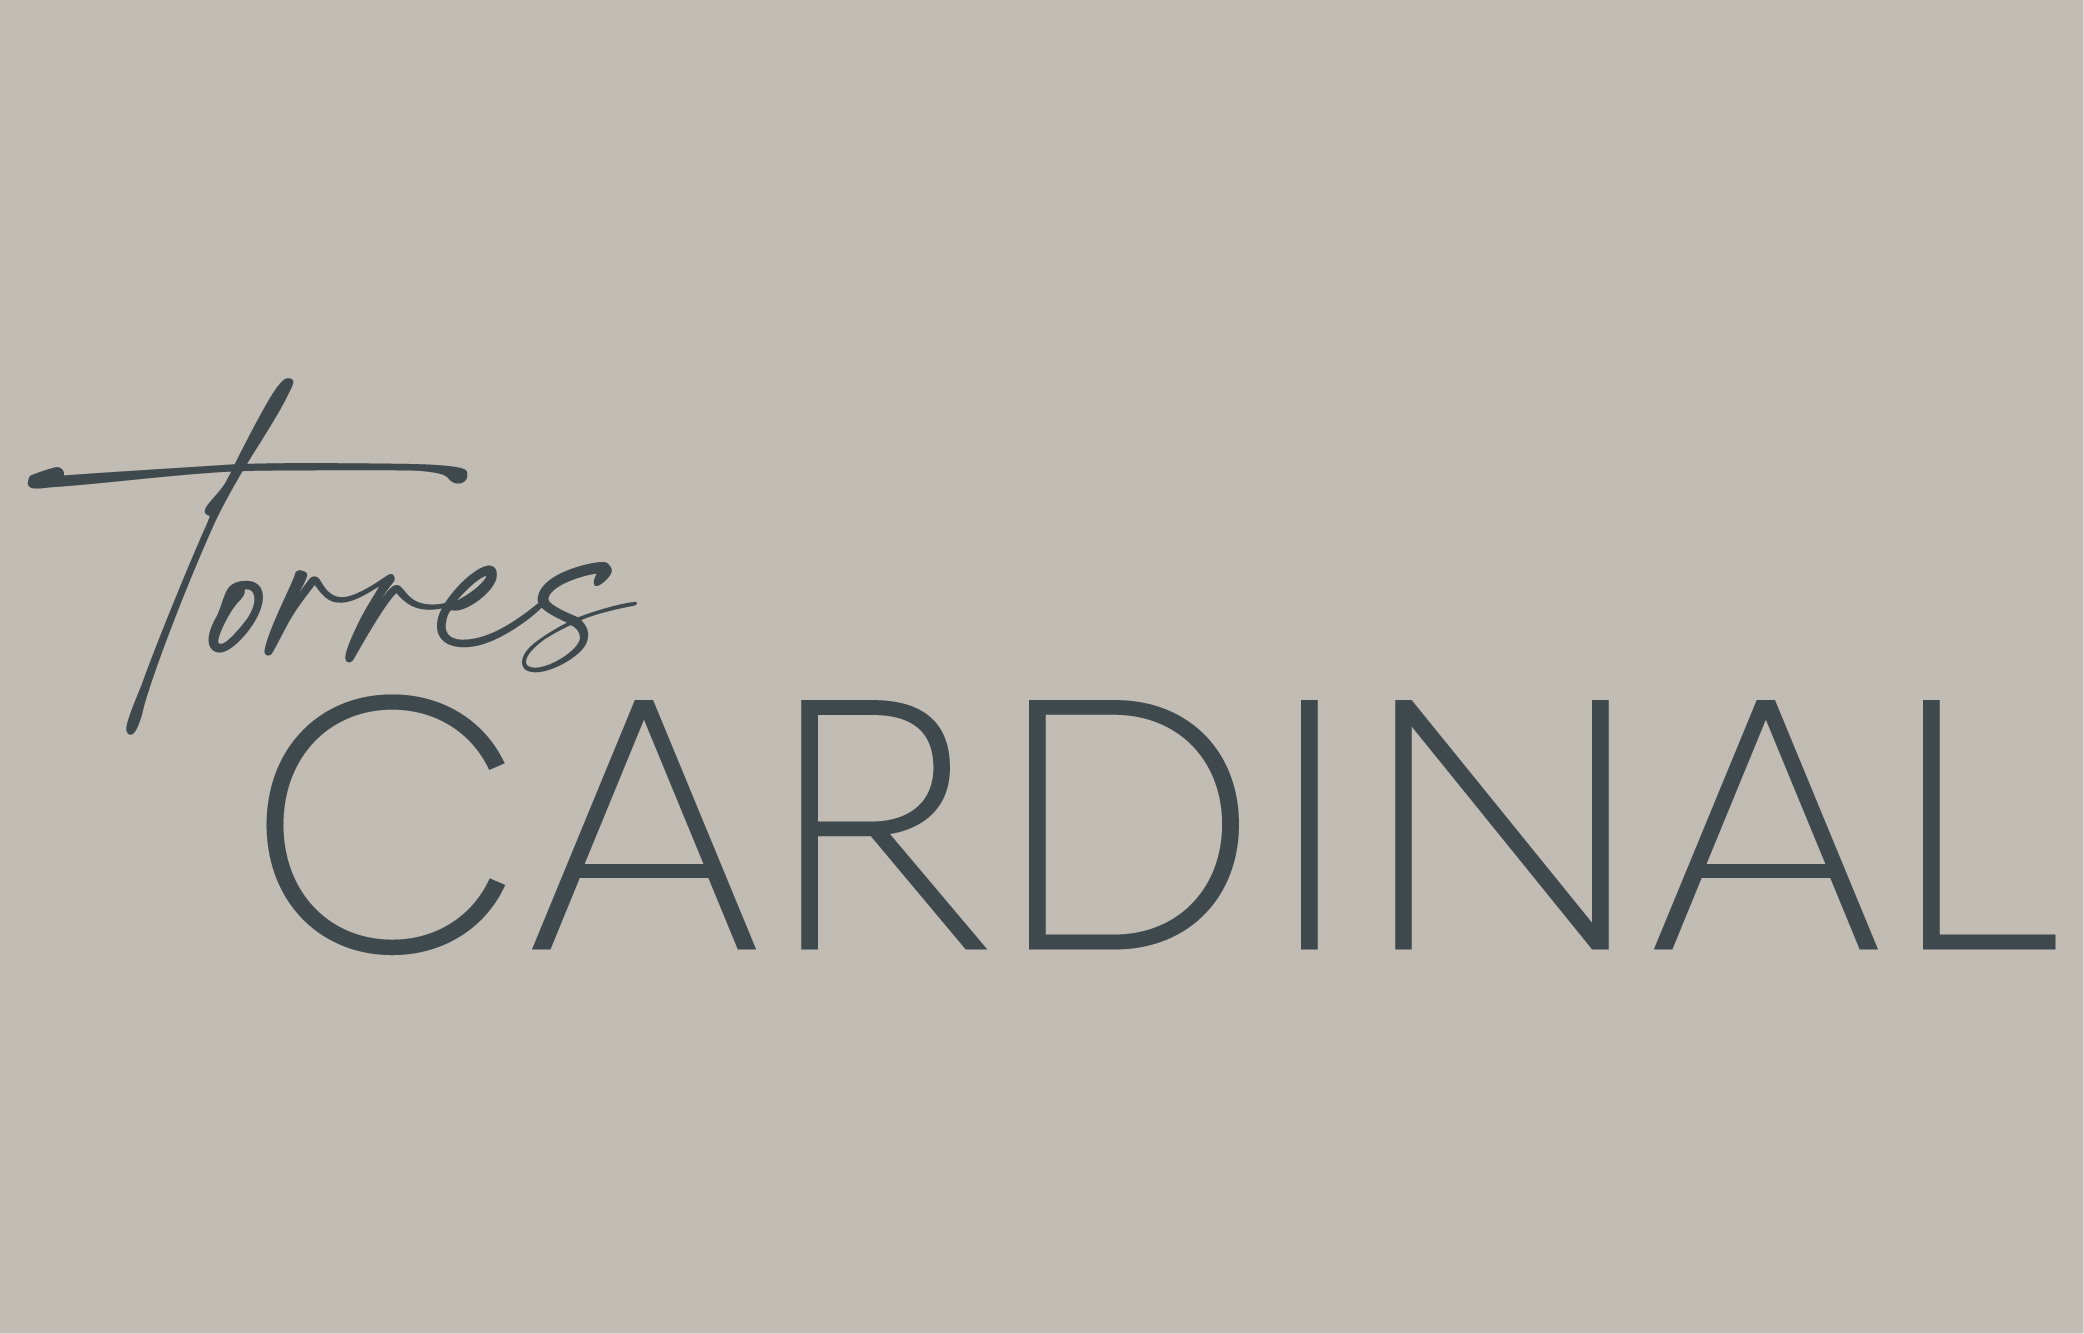 Torres Cardinal